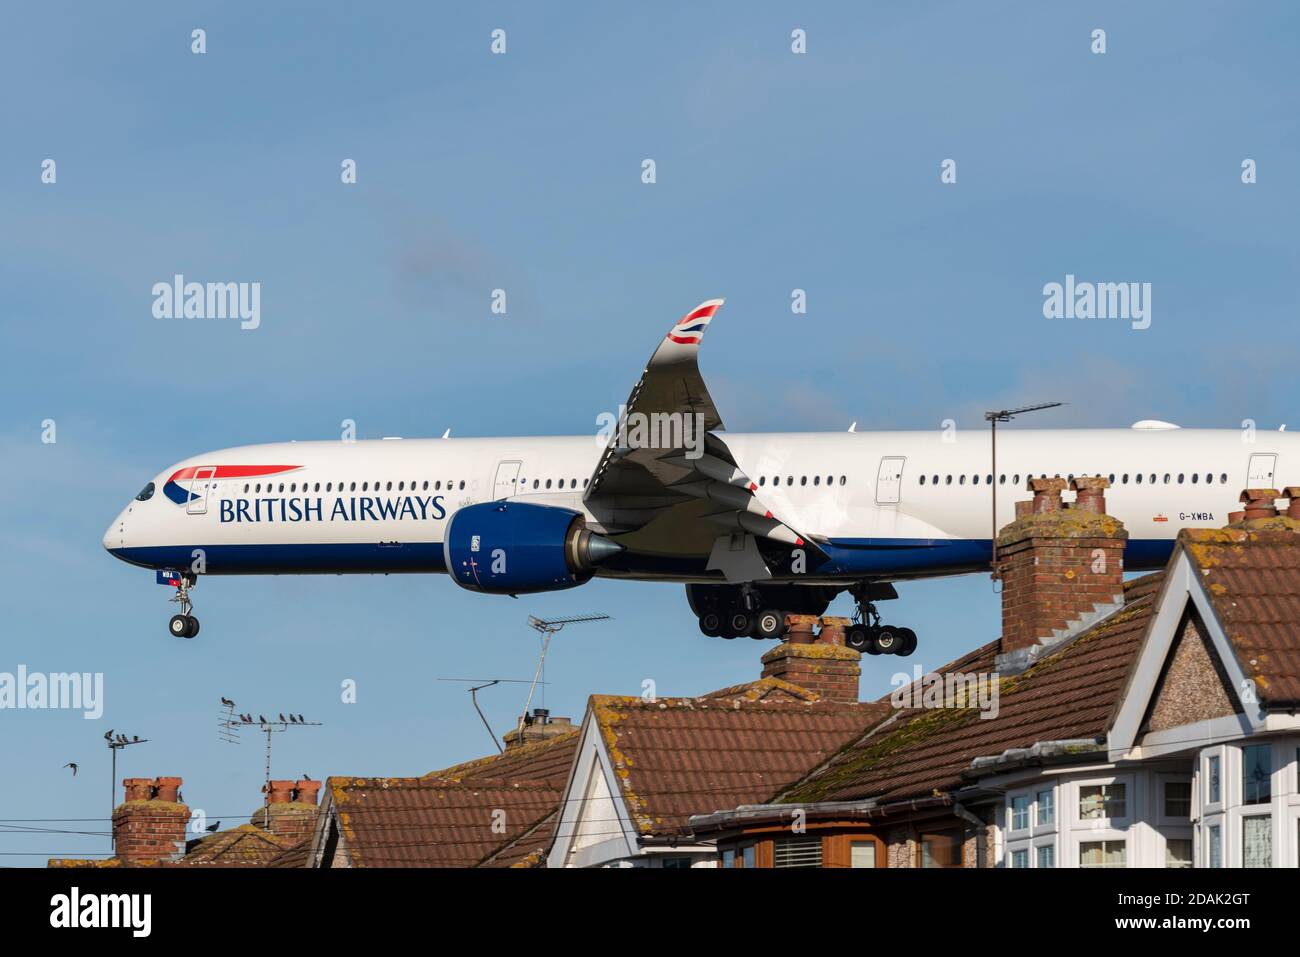 British Airways-Jet-Flugzeug auf dem Anflug auf den Flughafen London Heathrow, Großbritannien, über Dächer von Häusern in der Nähe des Flughafens zu landen. Eigenschaften unter flightpath Stockfoto